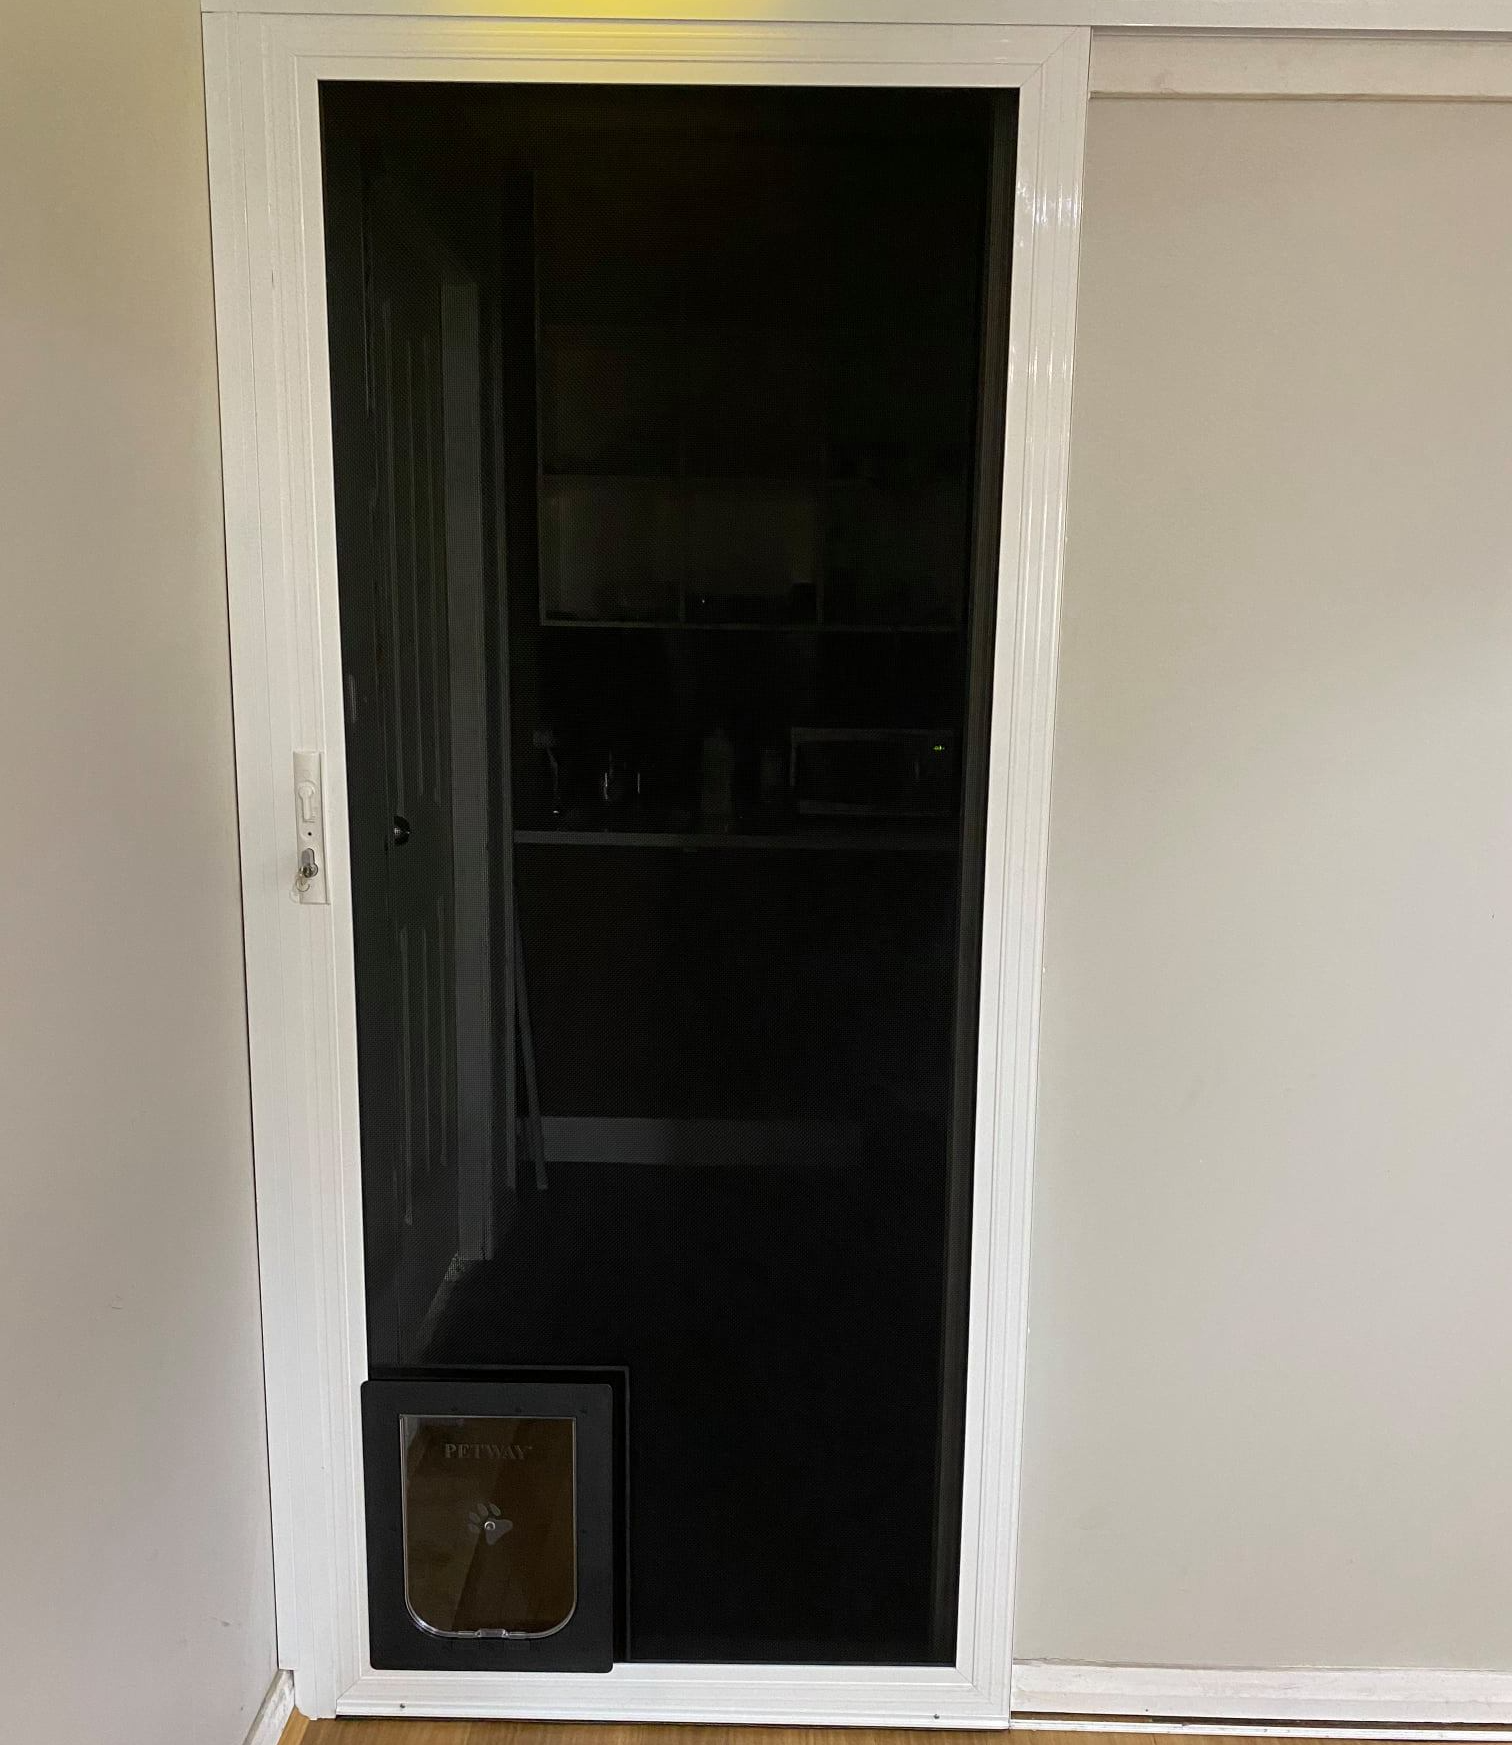 Crimsafe sliding door with pet door — GPW Security Screens NSW in Cardiff, NSW